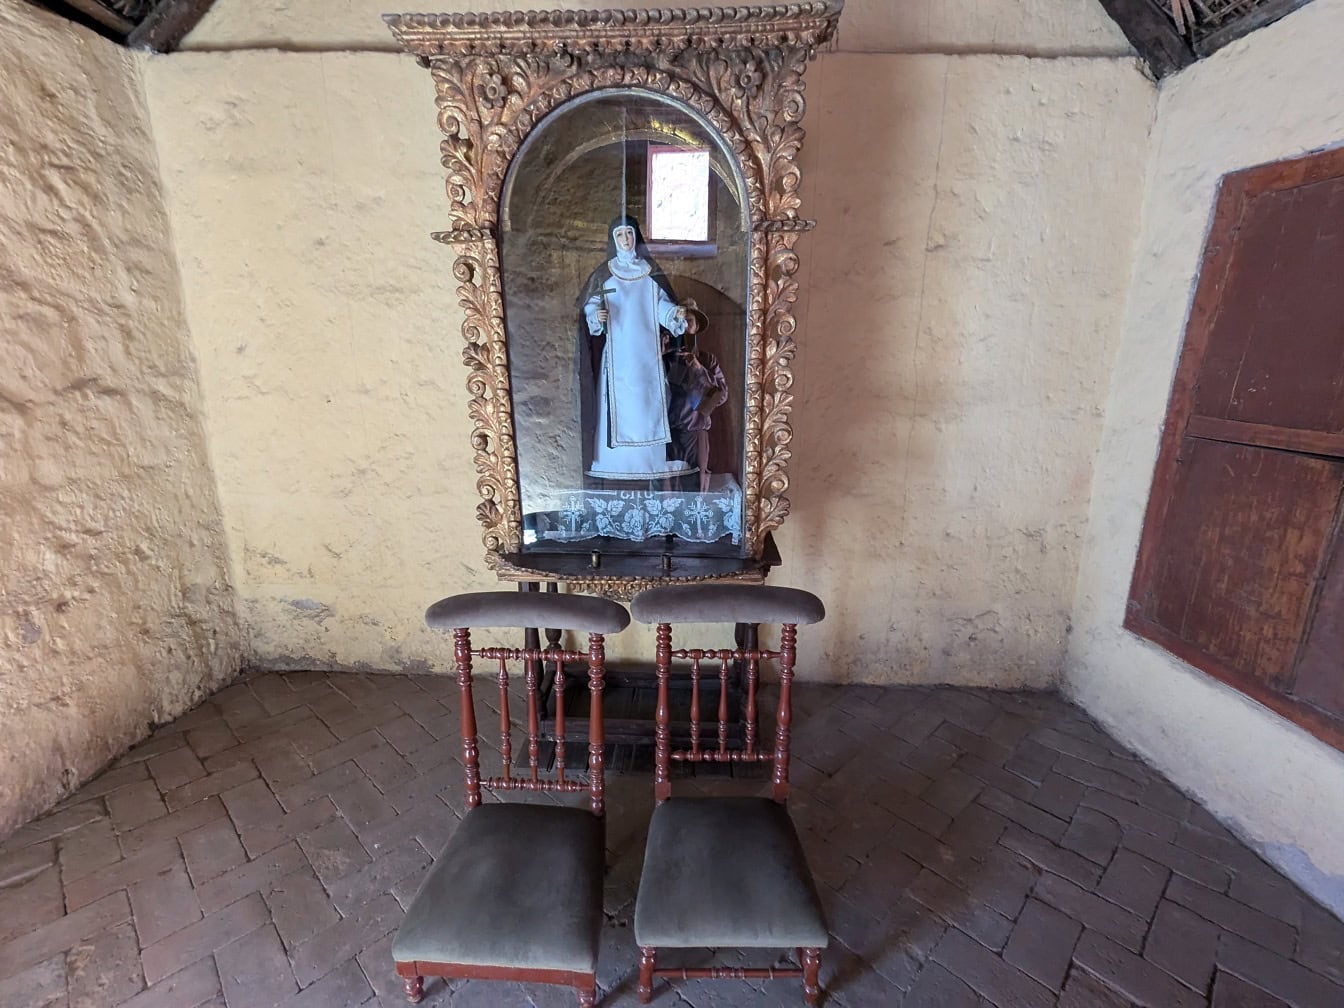 페루의 카톨릭 수도원에서 의자가 있는 방에 있는 수녀의 동상